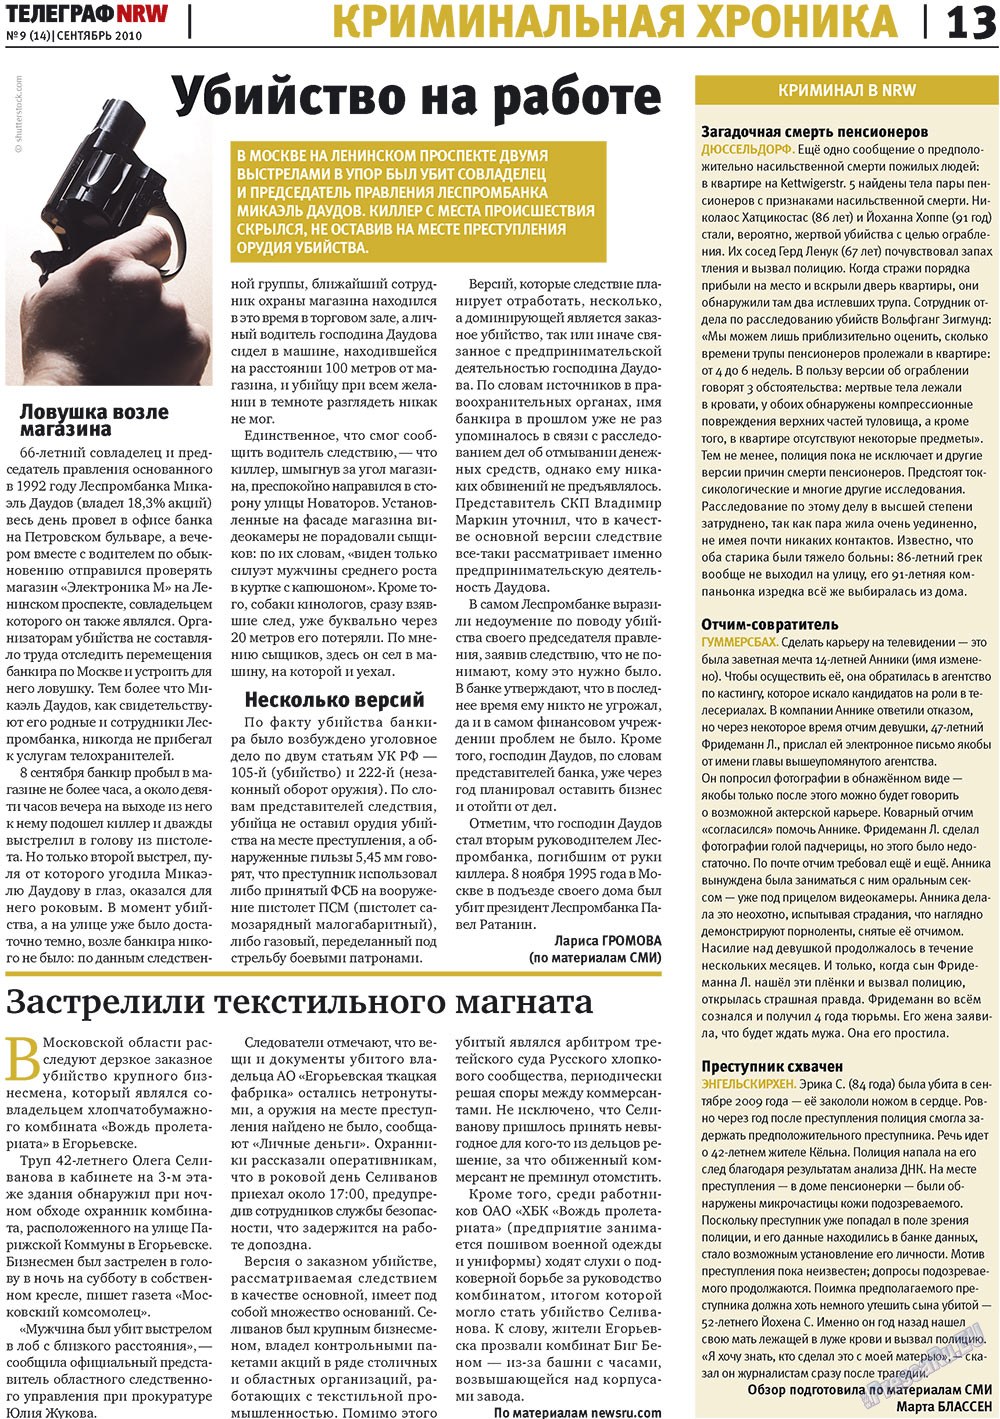 Телеграф NRW (газета). 2010 год, номер 9, стр. 13